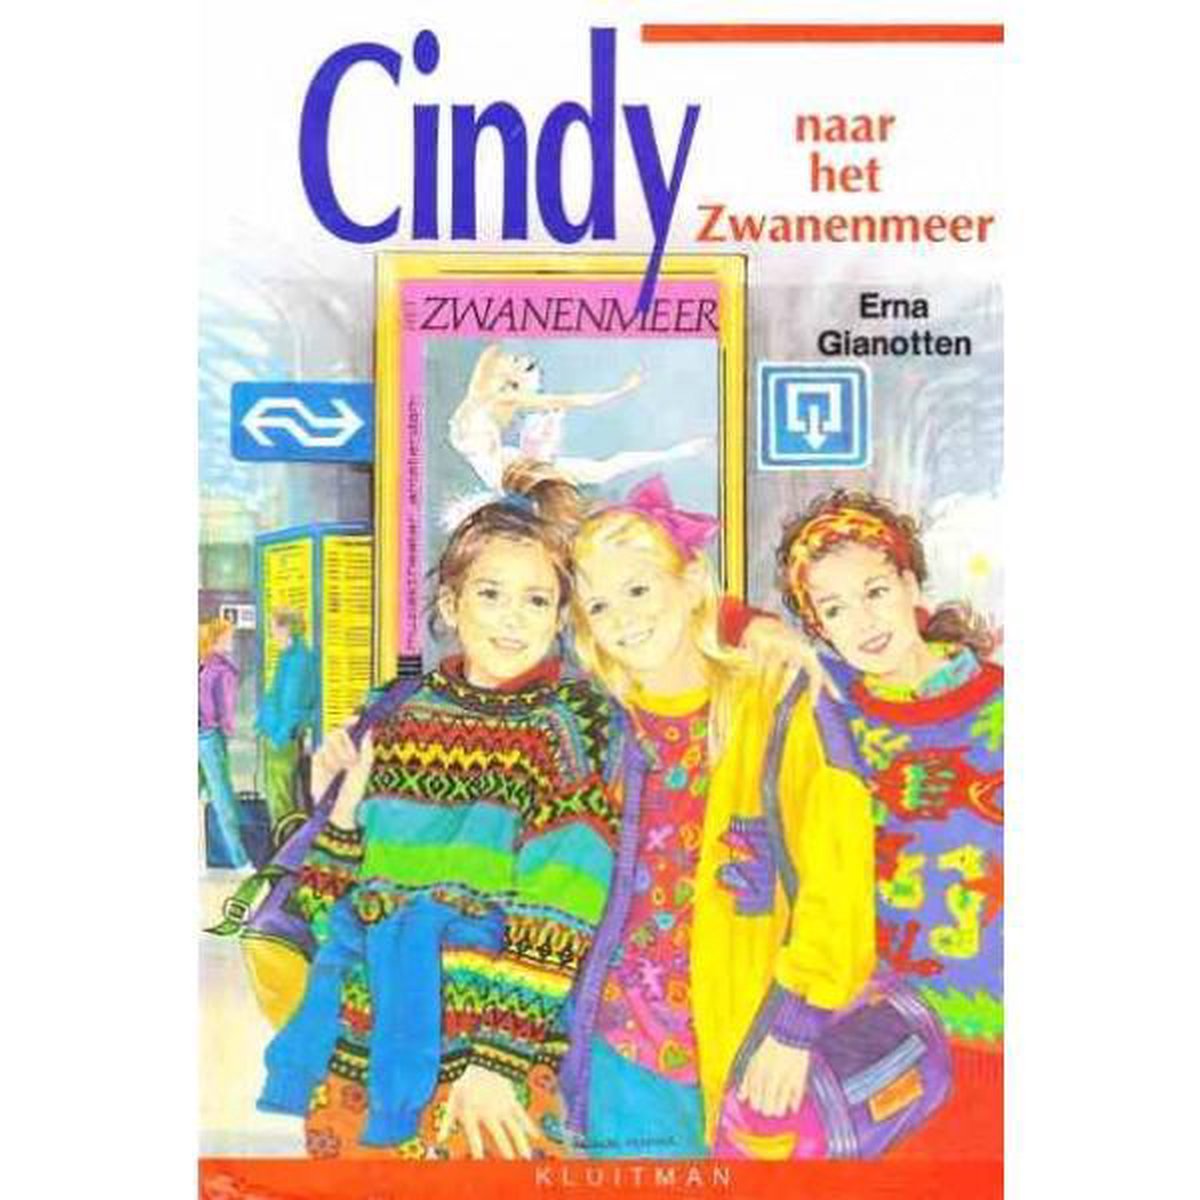 Cindy naar het Zwanenmeer / Sterserie